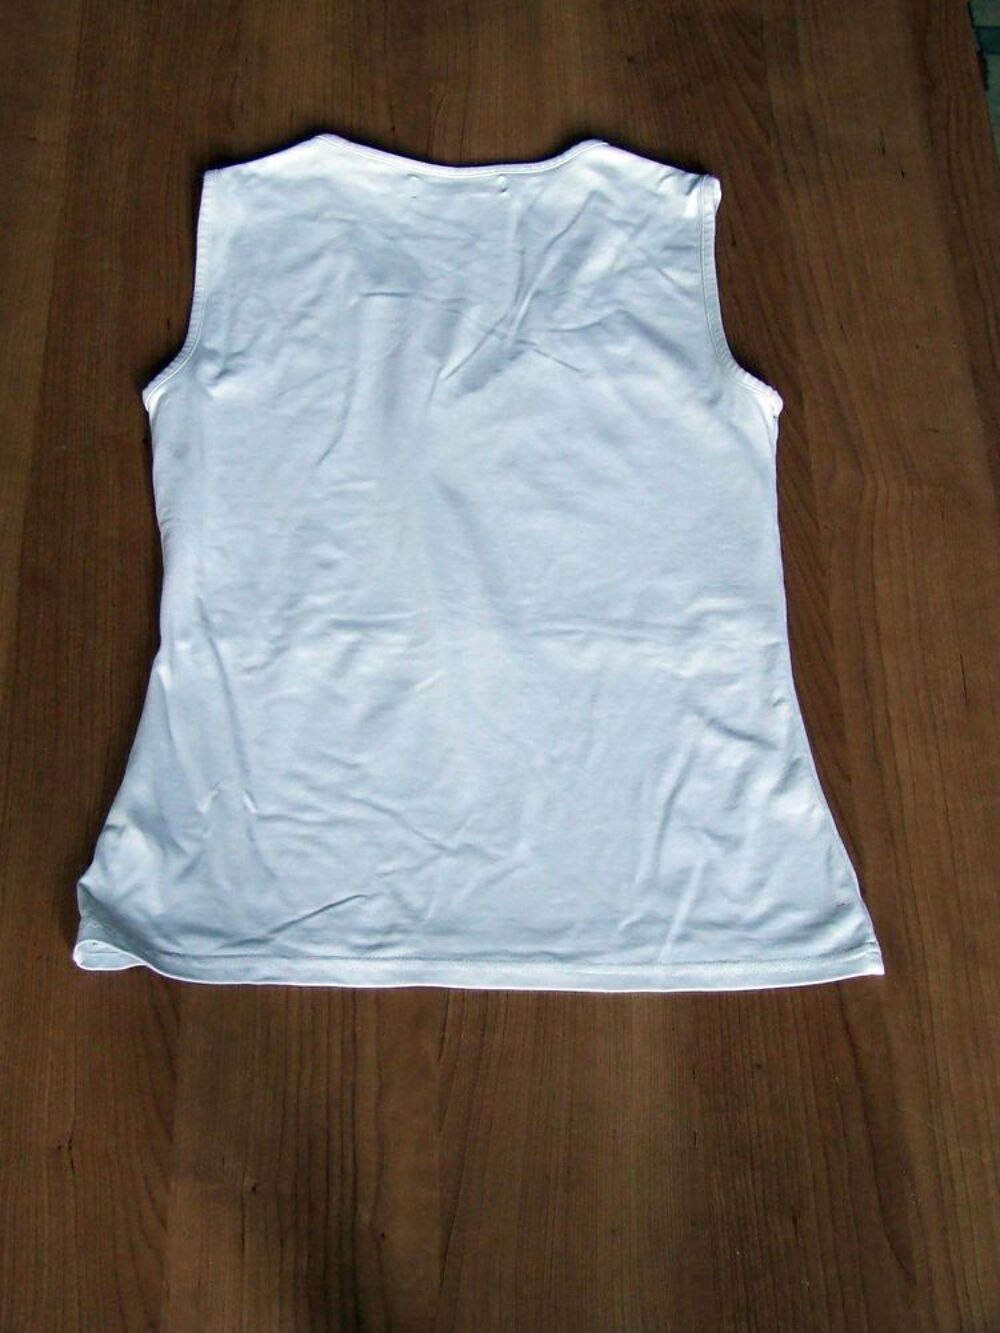 D&eacute;bardeur T-shirt Blanc, Cache cache, Taille 2 (M ou 38) TBE Vtements